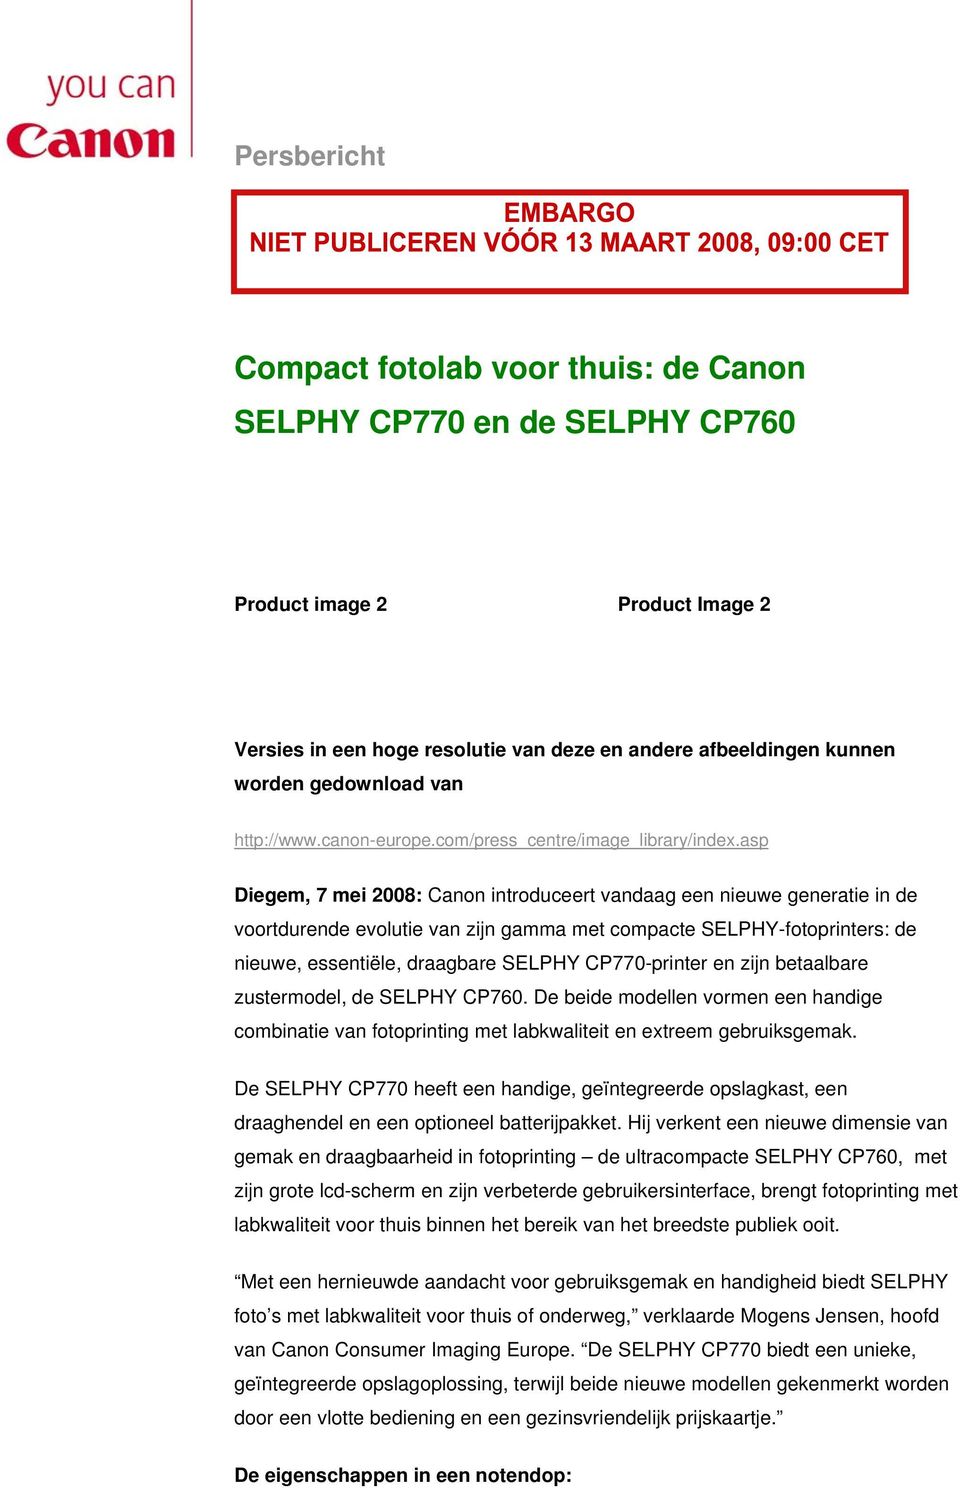 asp Diegem, 7 mei 2008: Canon introduceert vandaag een nieuwe generatie in de voortdurende evolutie van zijn gamma met compacte SELPHY-fotoprinters: de nieuwe, essentiële, draagbare SELPHY